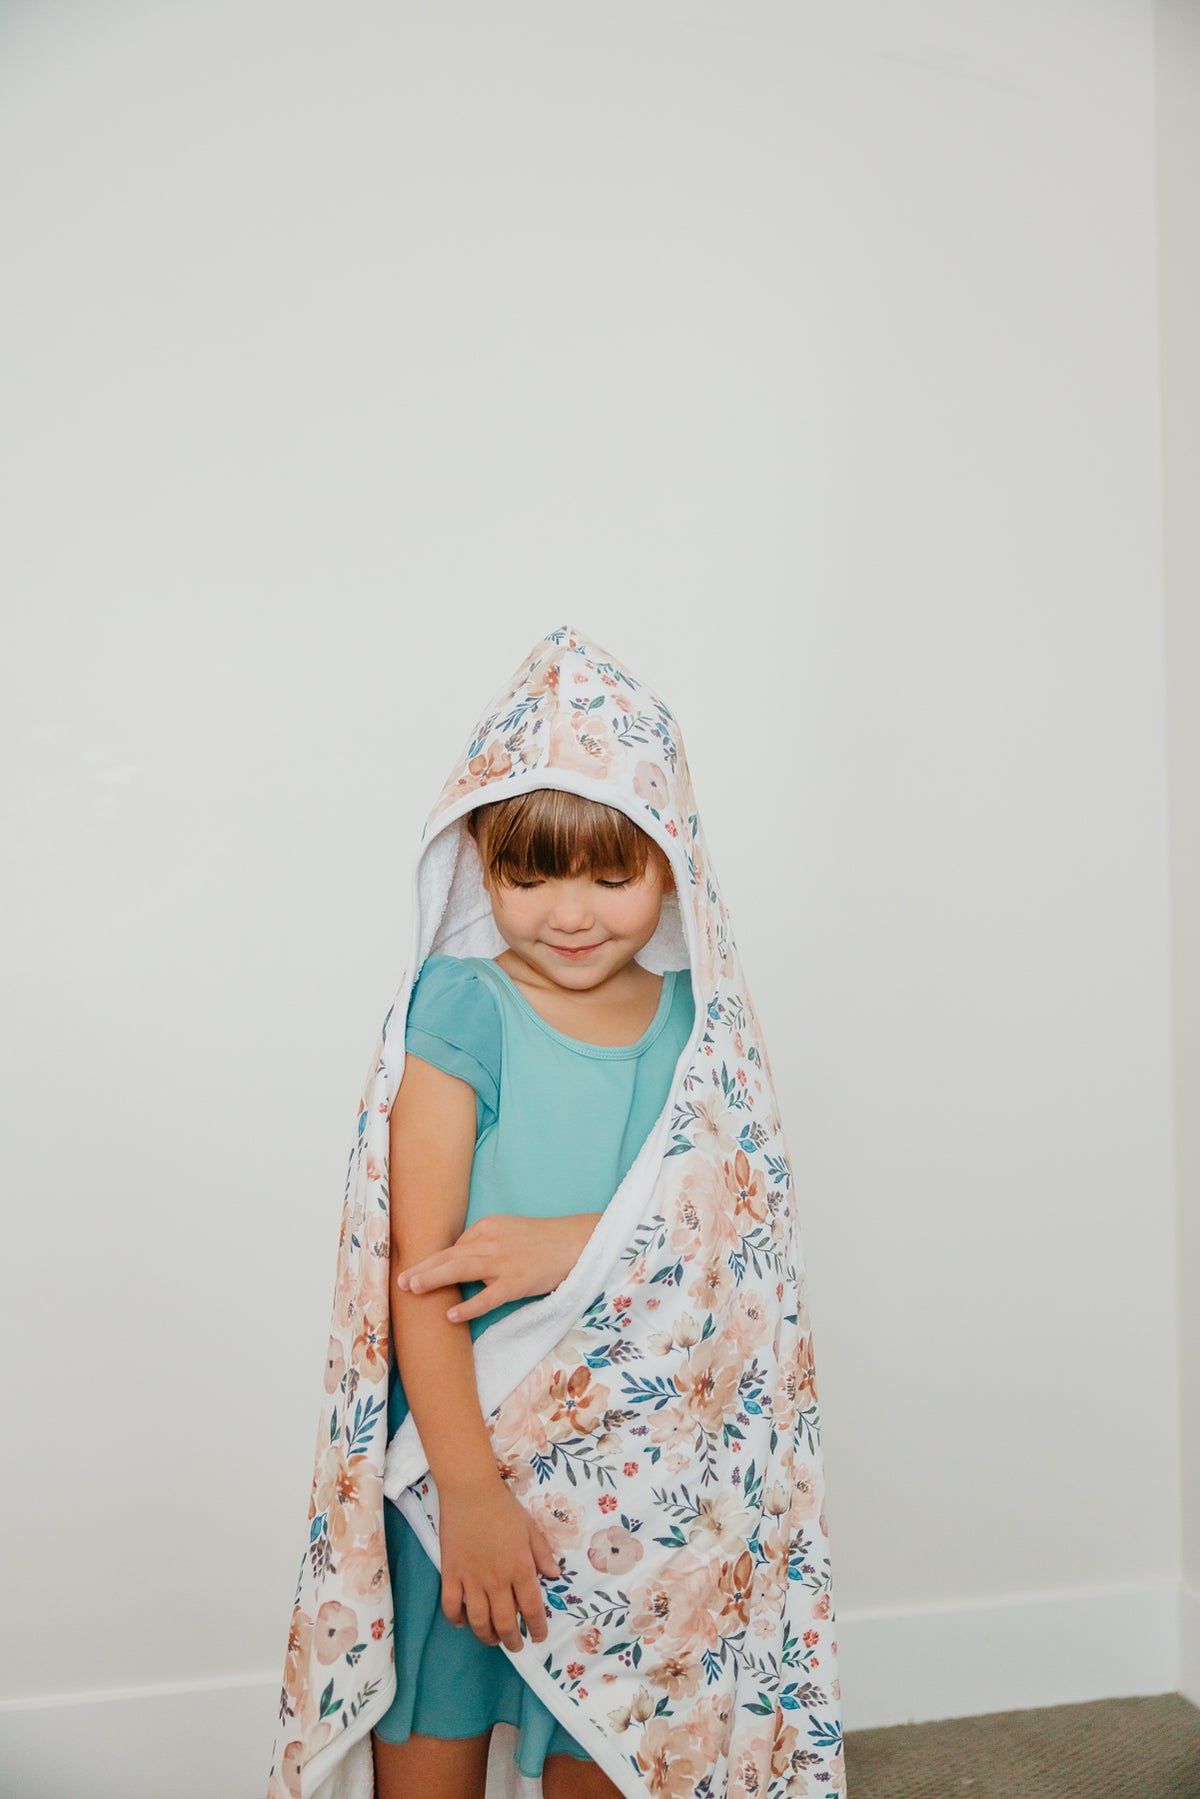 Premium Big Kid Hooded Towel - Autumn